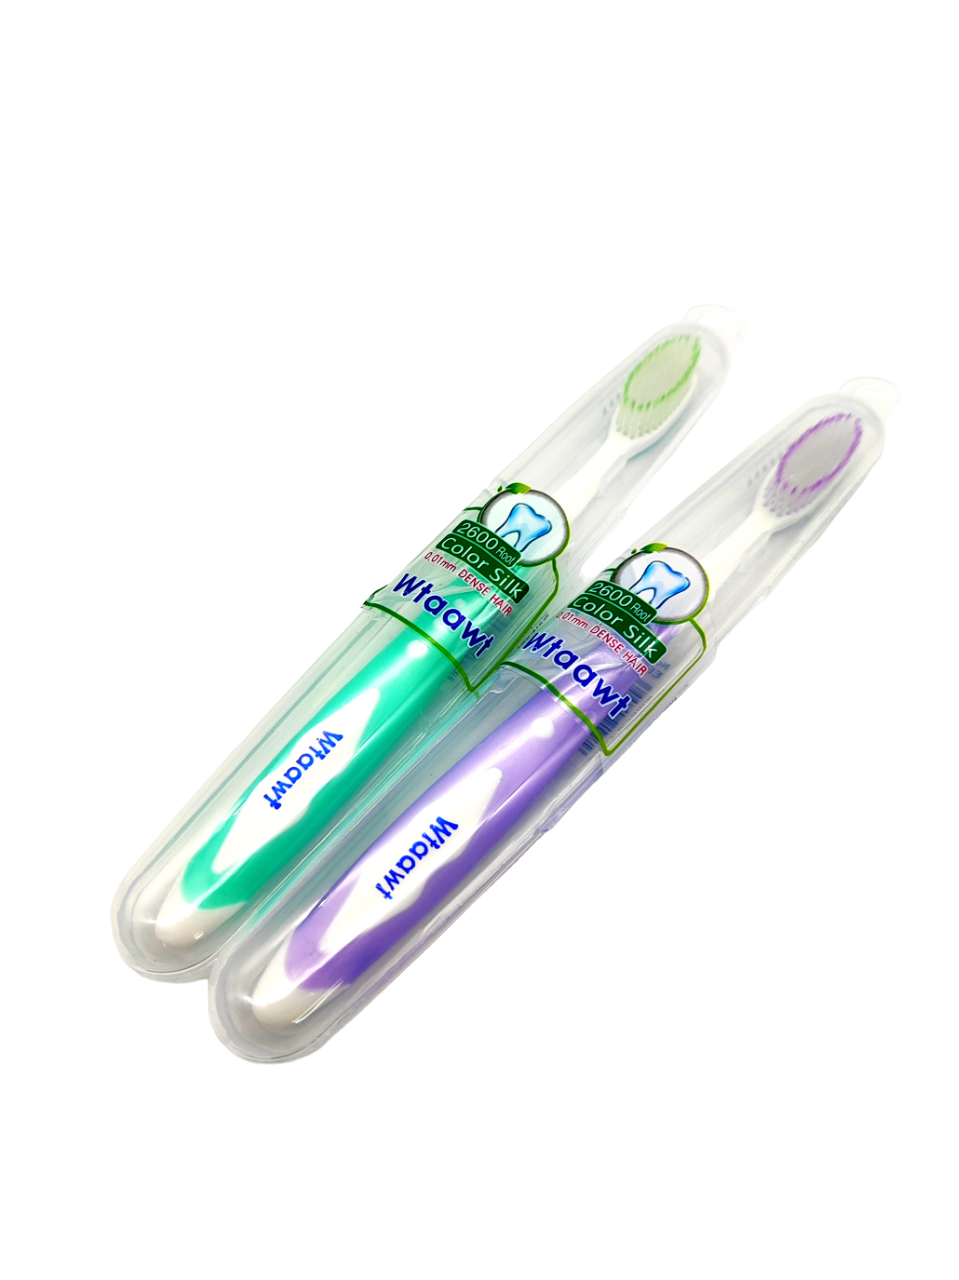 Комплект зубных щеток Wtaawt в футляре Цвет зеленый-фиолетовый 2 шт. комплект журнальных столов modesta зеленый мрамор титан